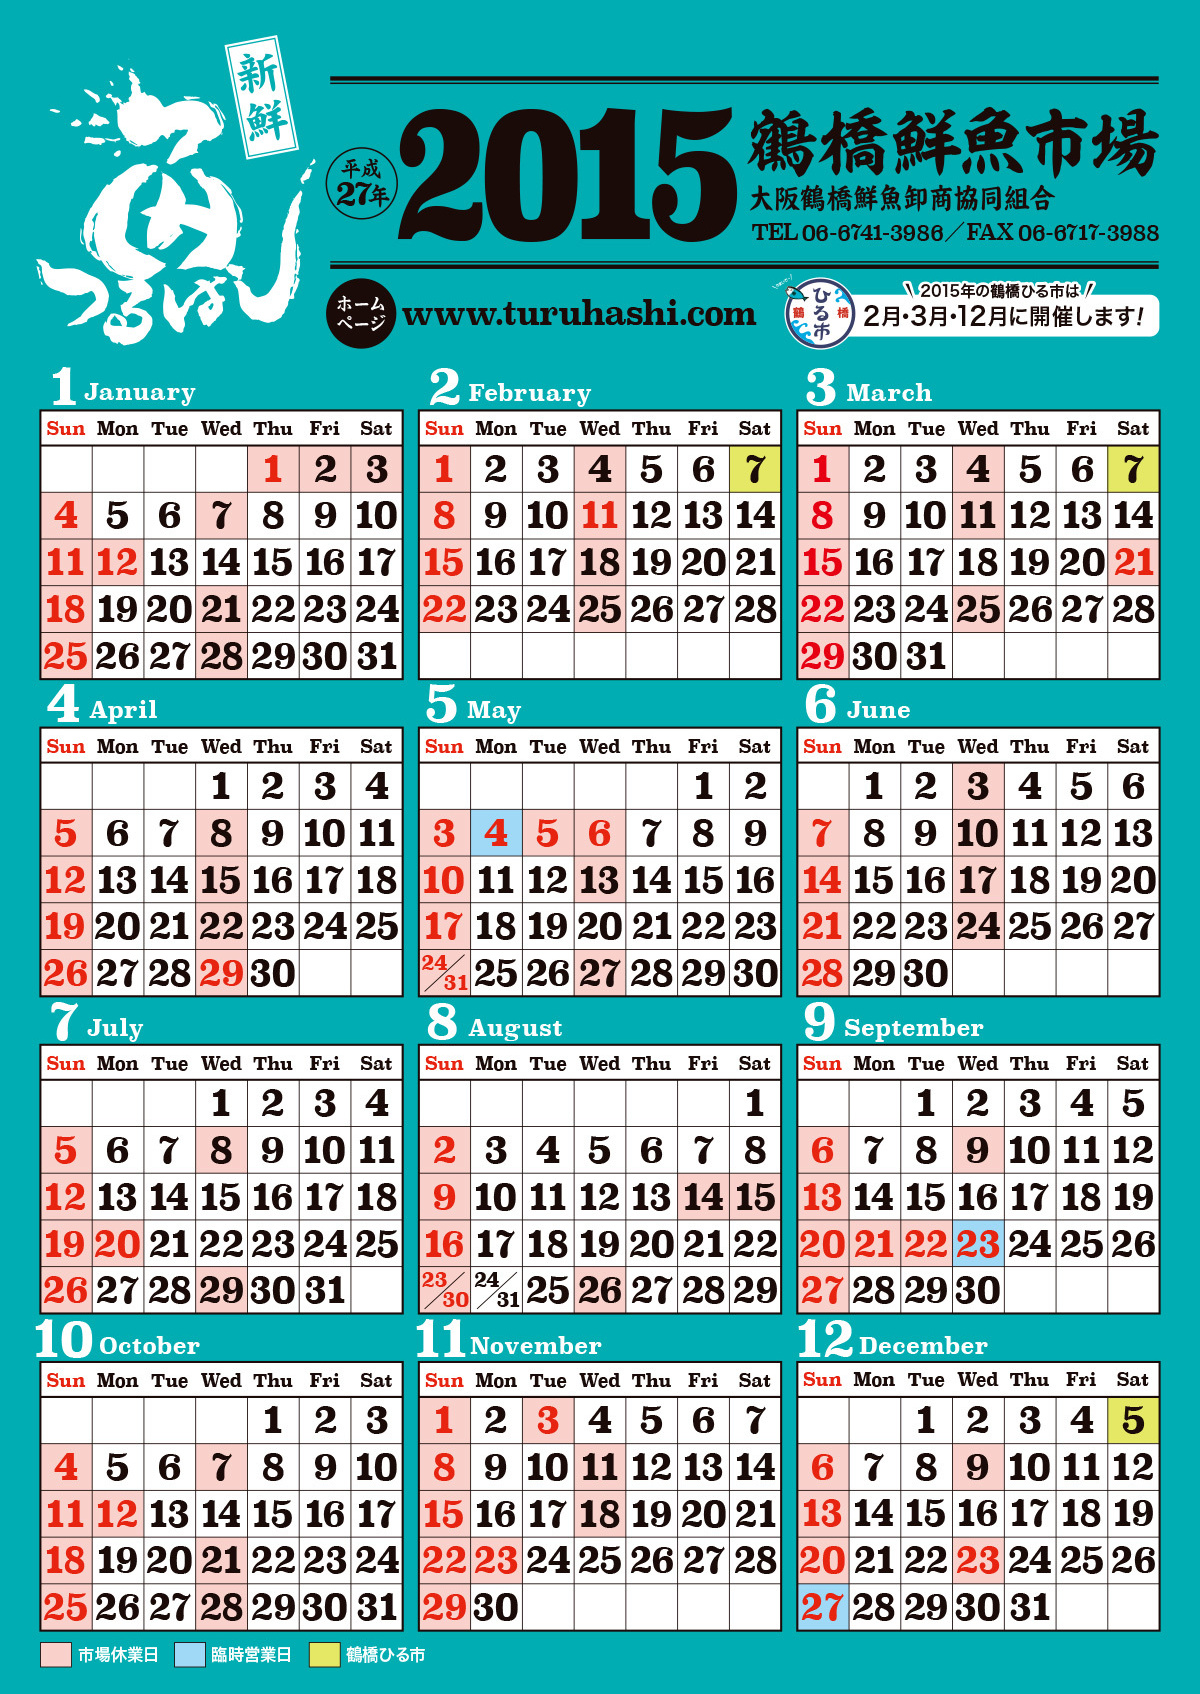 鶴橋鮮魚市場カレンダー2016